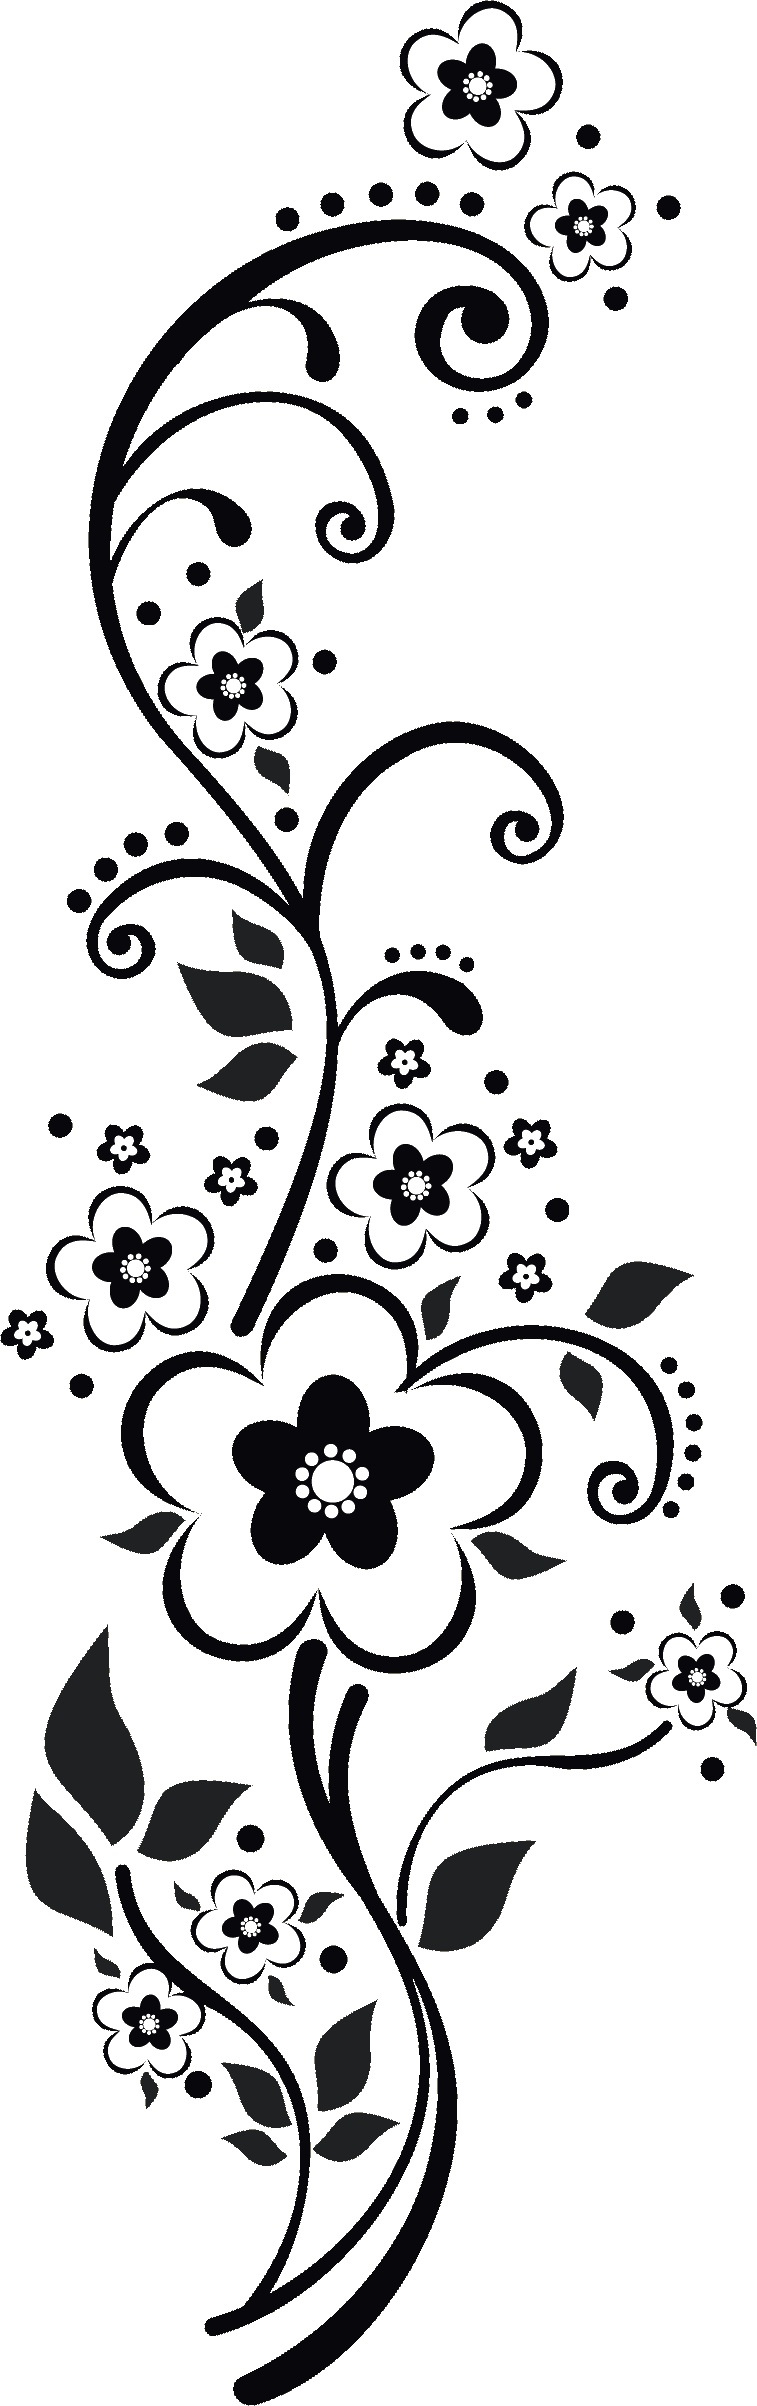 Simple Pero Precioso No Creeis Creaciones Blumen Vorlage Zeichnungen Und Malvorlagen